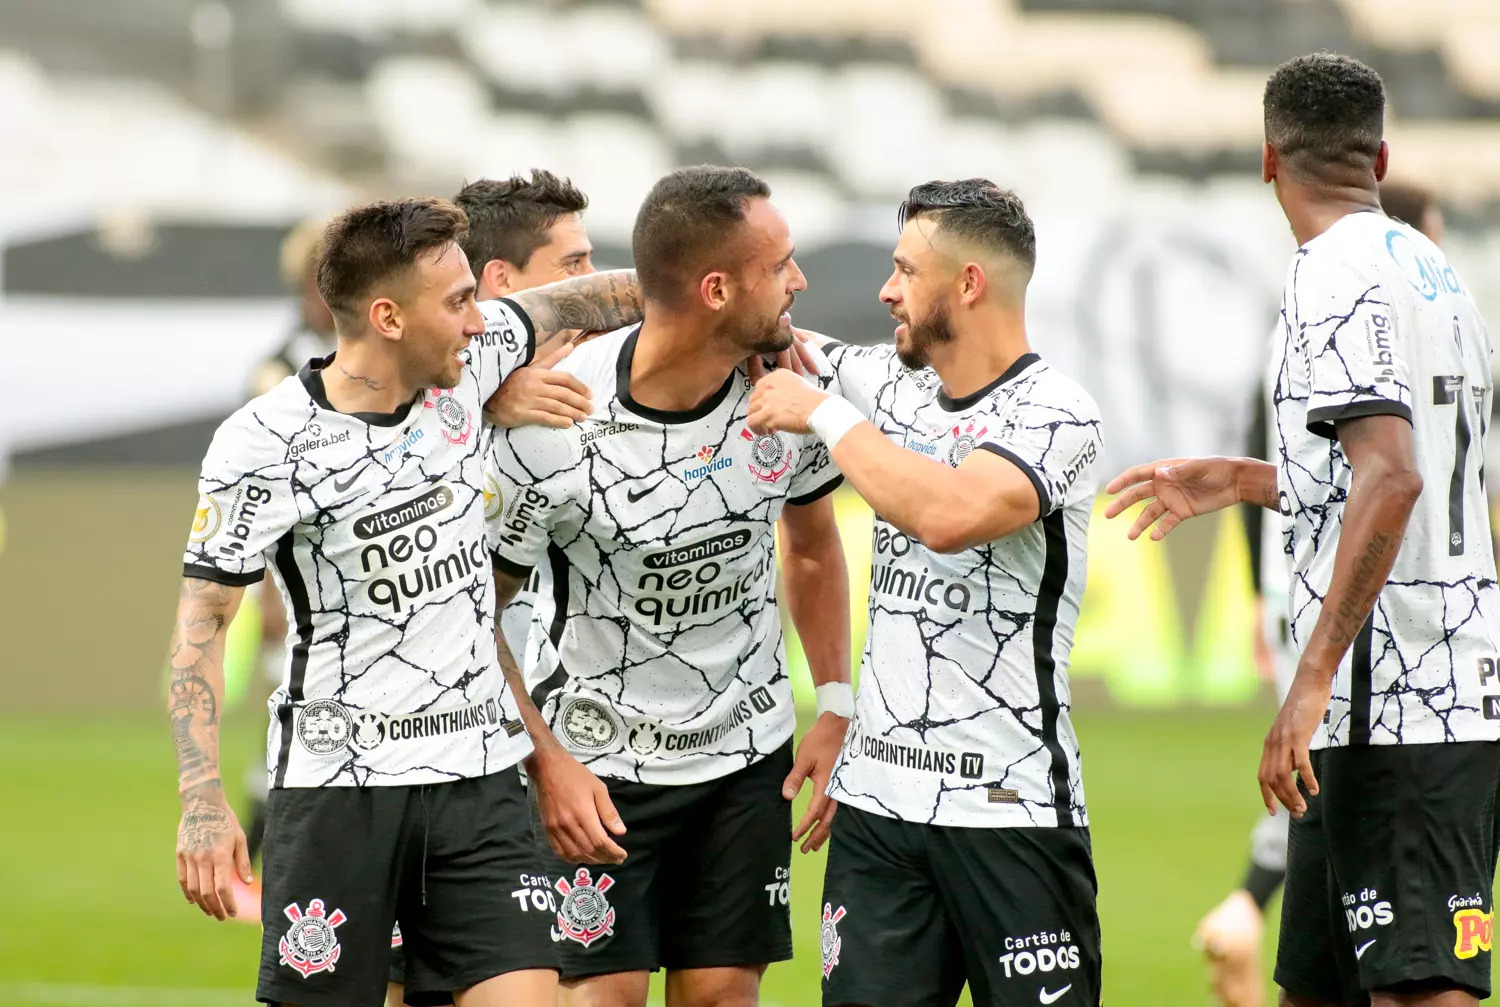 Assistir jogos do Corinthians ao vivo: 3 aplicativos para não perder nenhum lance - Fonte: Reprodução
